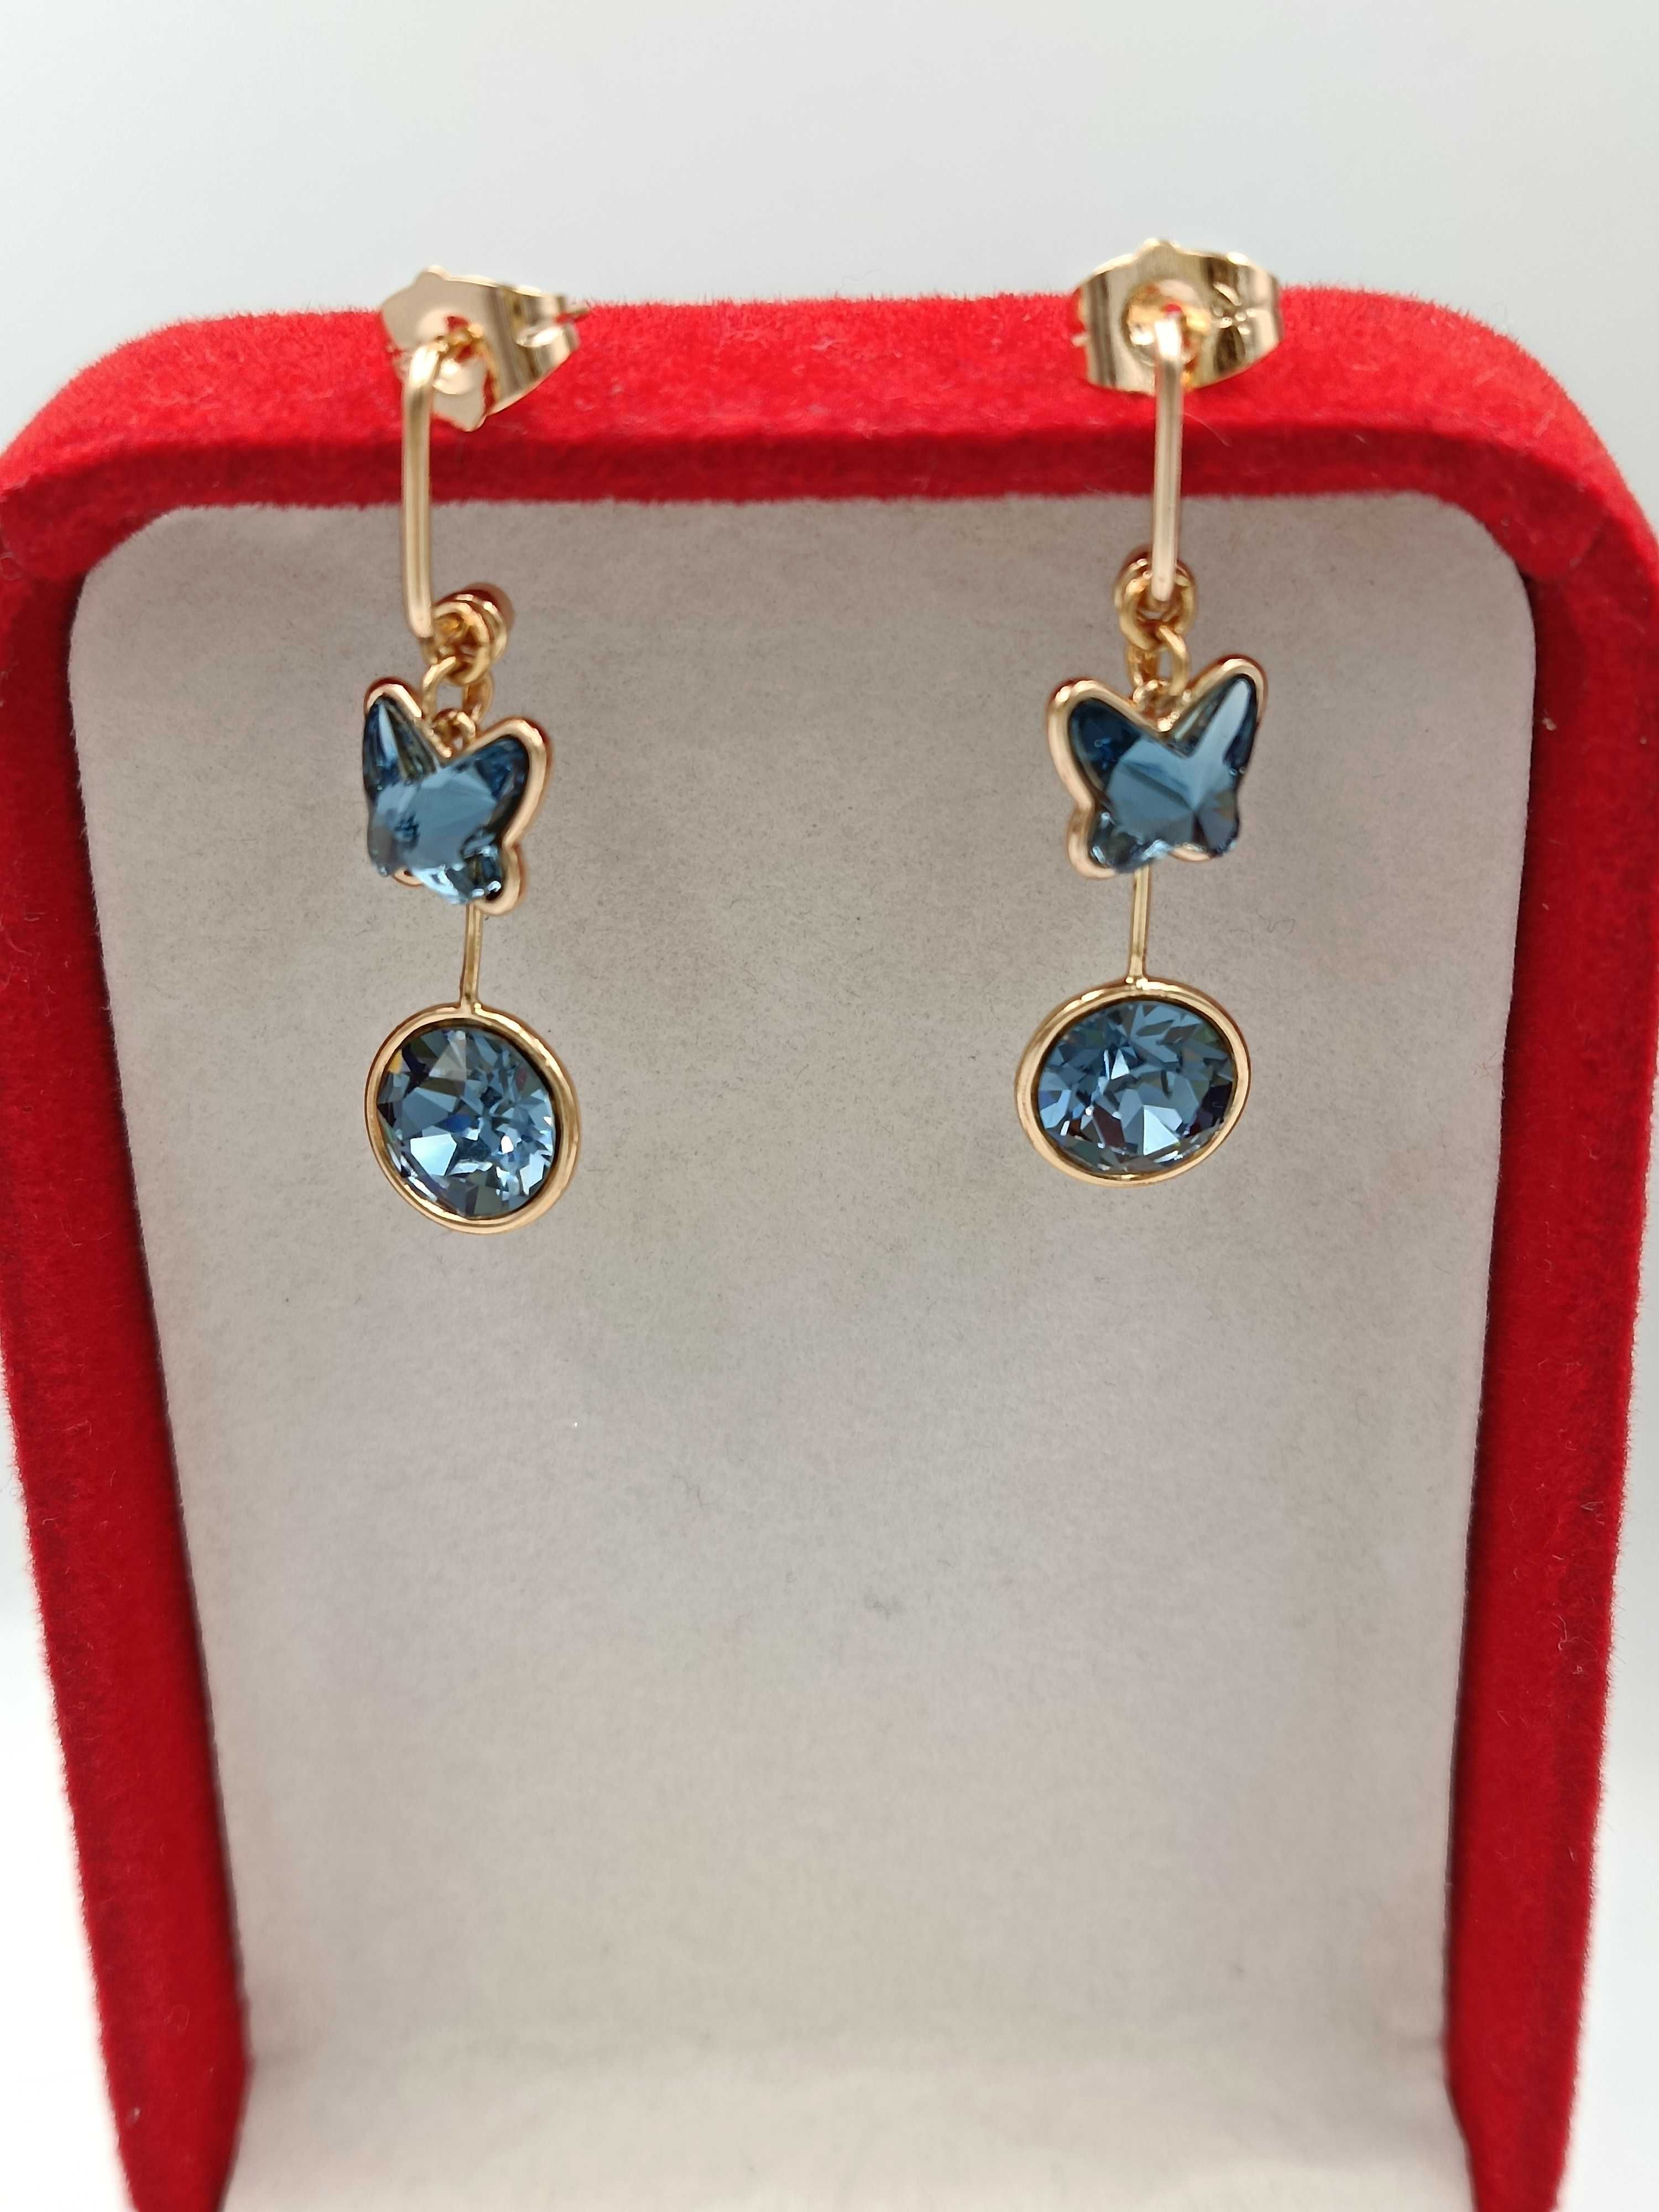 Kolczyki pozłacane 18k złotem z kryształkami Swarovskiego blue - SUPER